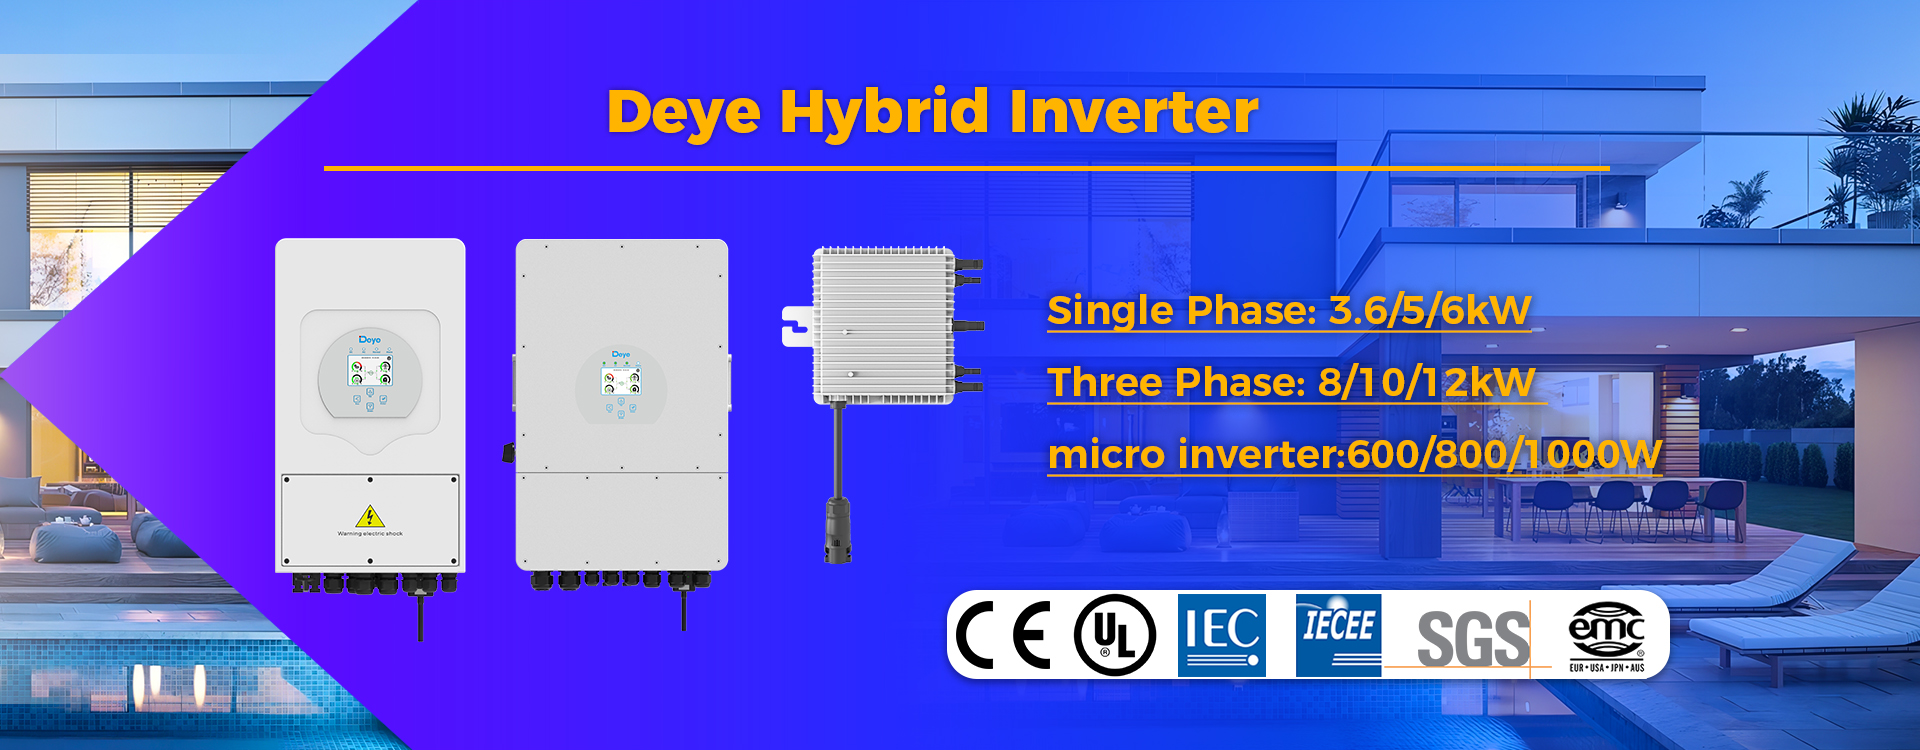 I-deye hybrid inverter microinverter